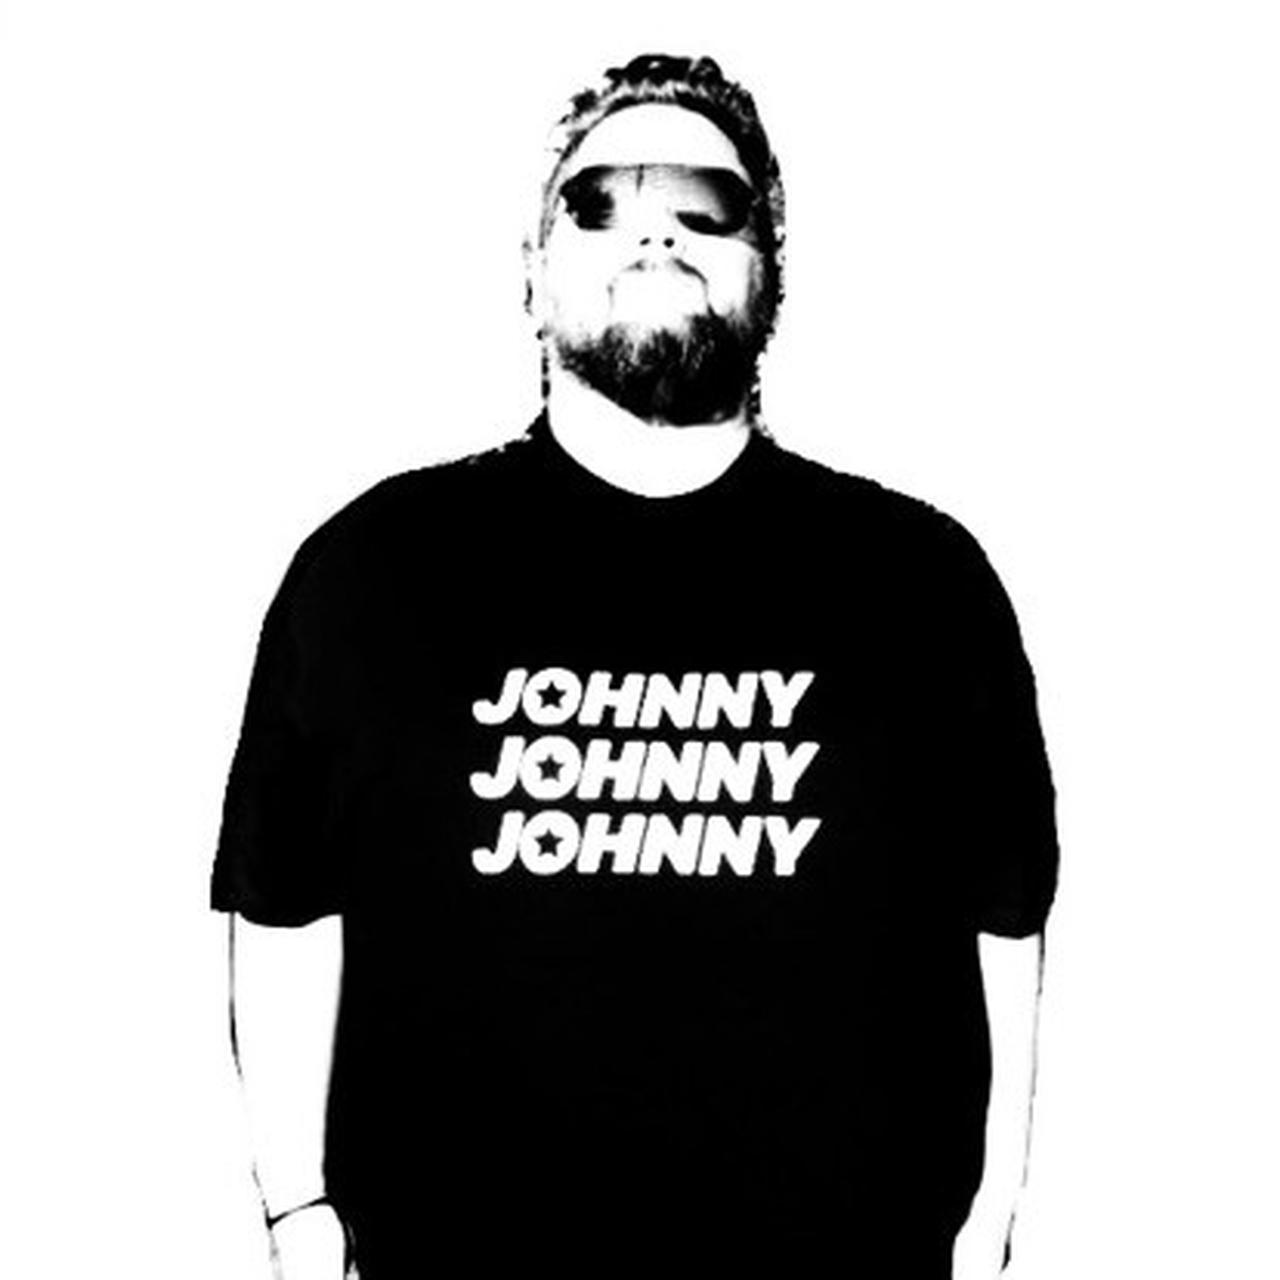 Johnny Johnny Johnny” T Shirt Xxxl Designed By Depop 